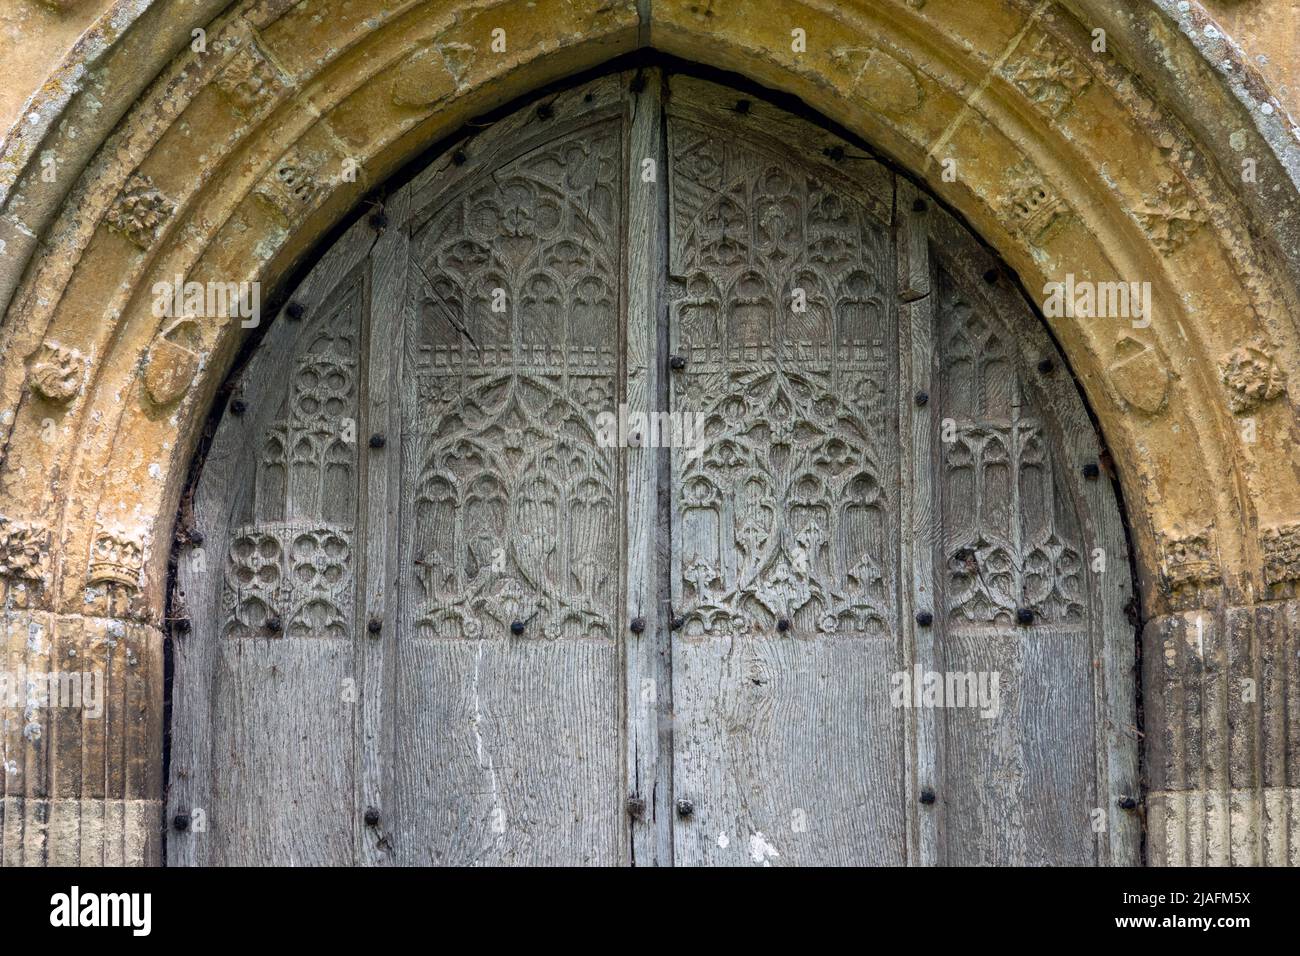 Porte en bois finement sculptée dans une arcade en pierre décorative dans un mur de flanelle, église de la Toussaint, Brandeston, Suffolk Banque D'Images